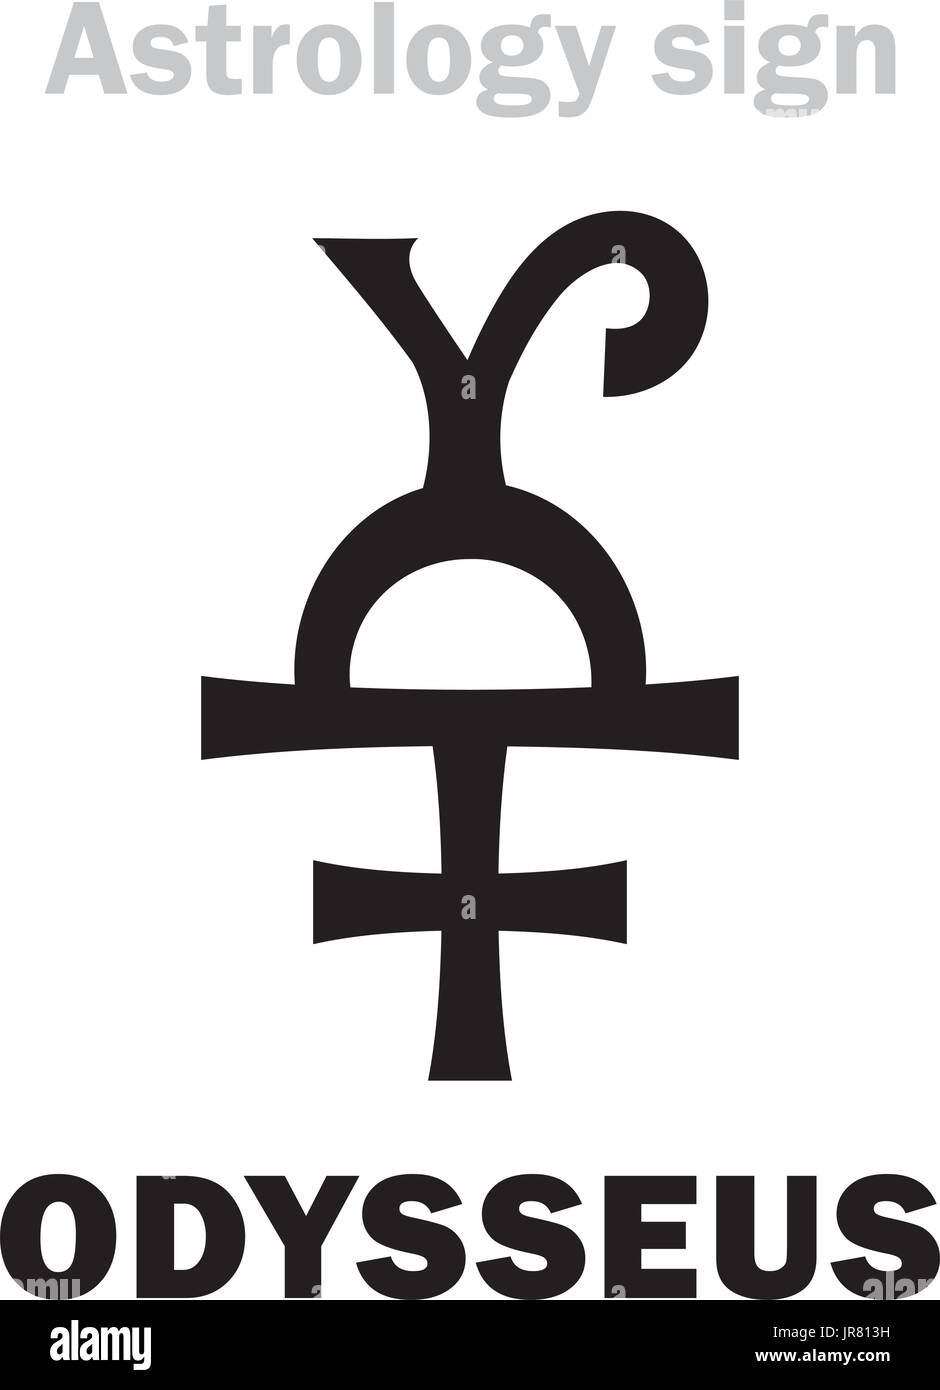 Astrologie-Alphabet: ODYSSEUS (Odysseus), Asteroid #1143. Hieroglyphen Charakter Zeichen (einzelnes Symbol). Stock Vektor